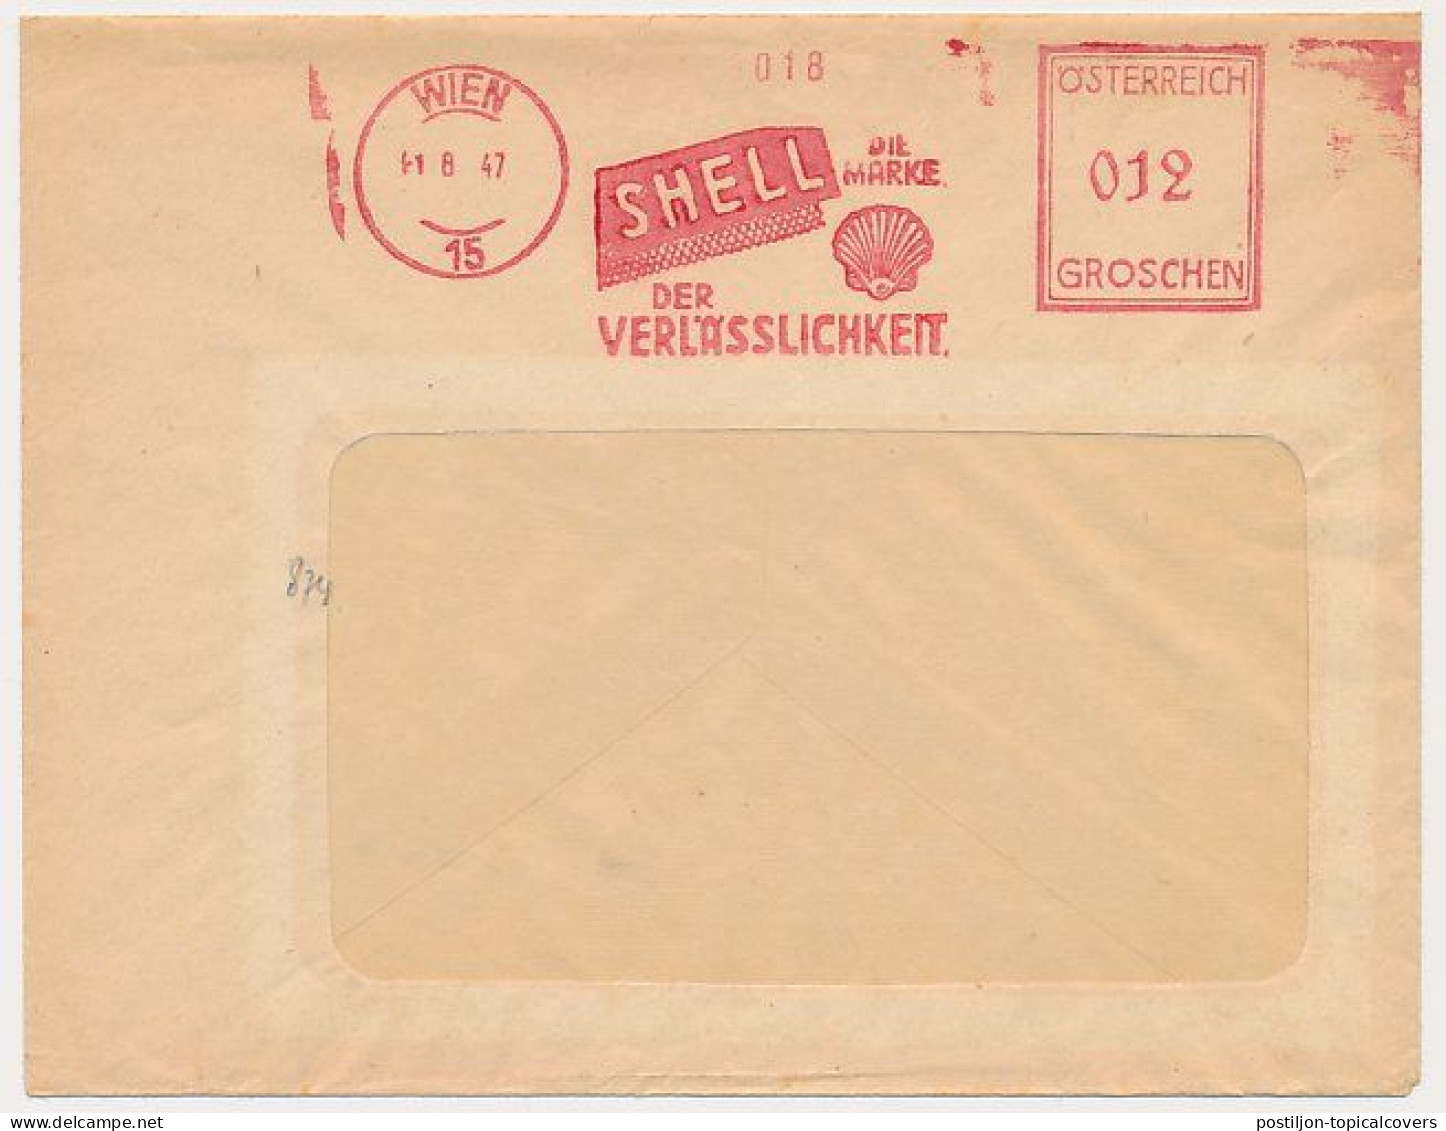 Meter Cover  Austria 1947 - SHELL - Oil - Oil